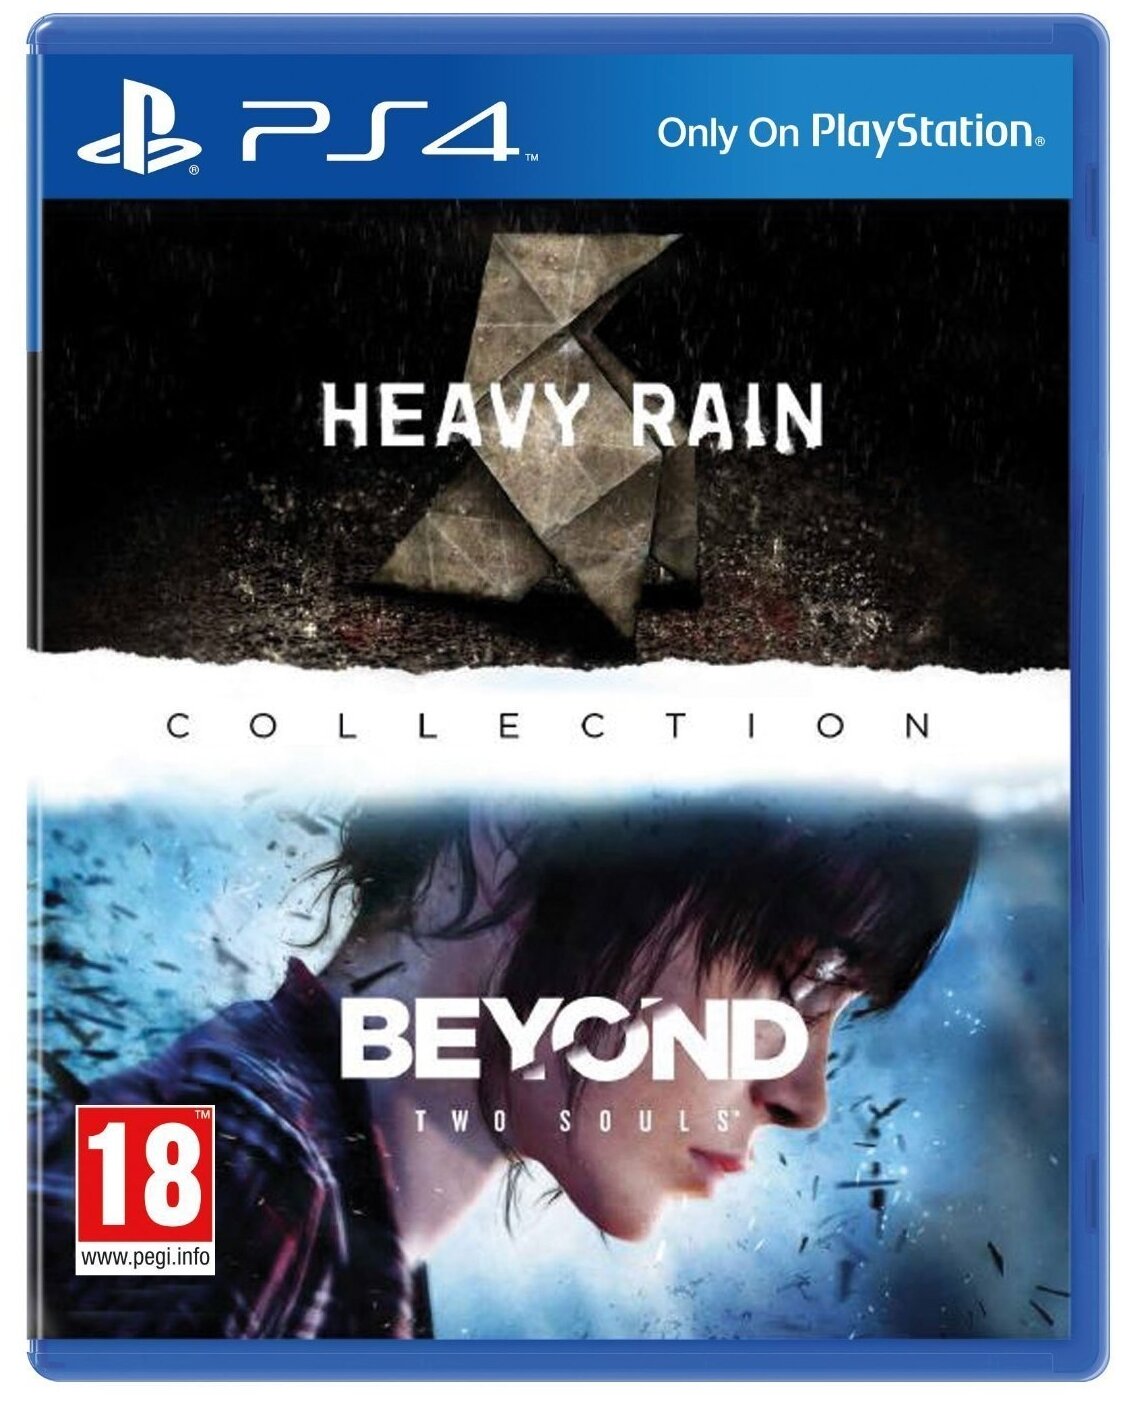 Коллекция Heavy Rain и За гранью: Две души (PS4) английский язык